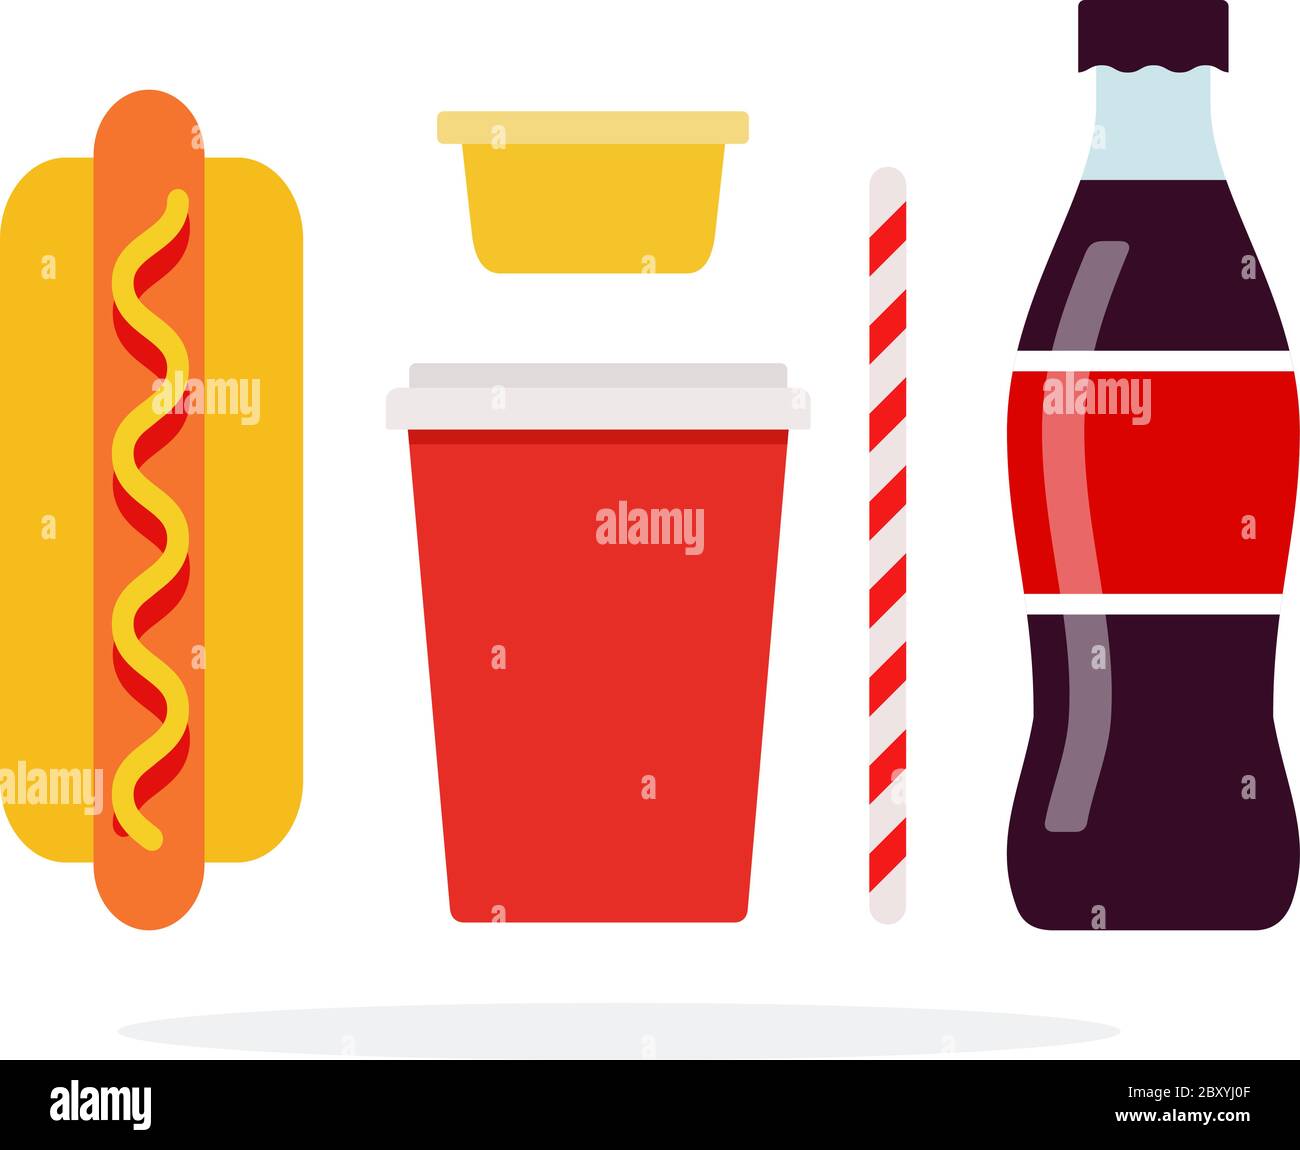 Hot Dog, großer Plastikbecher für Getränke, Soda in einer Flasche, Strohhalme, Senfbehälter Stock Vektor